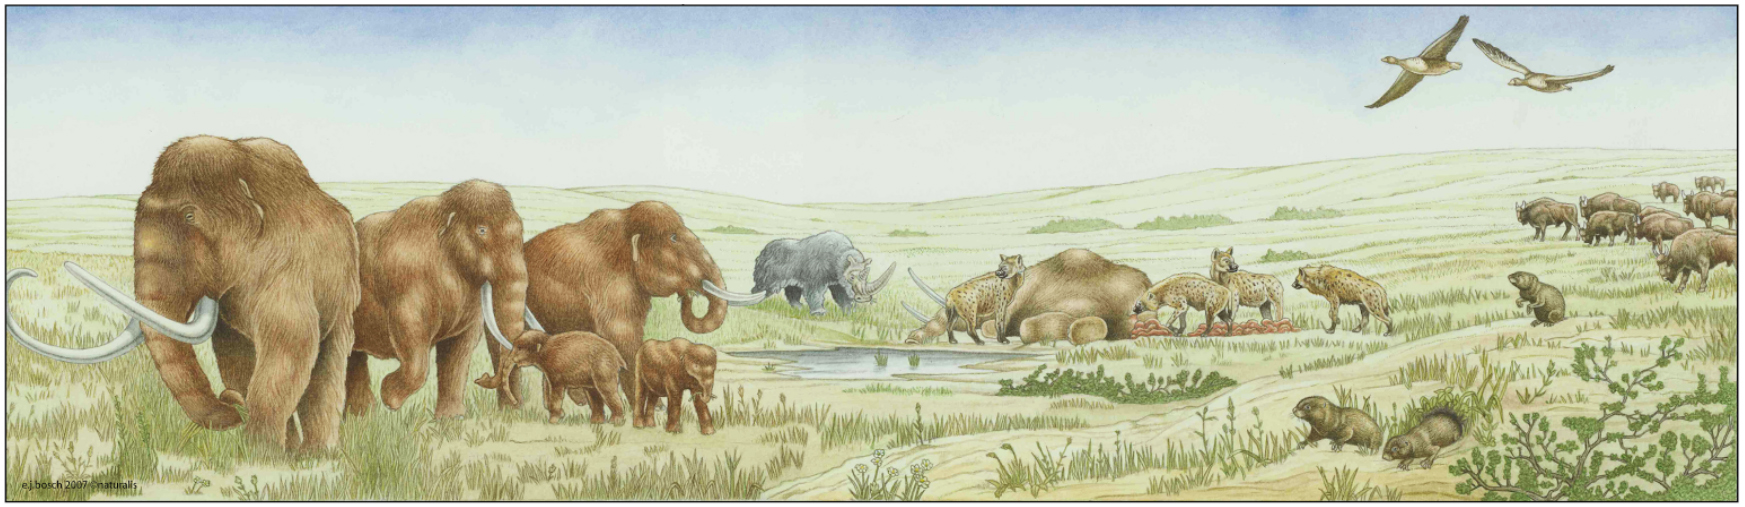 IJstijdbeesten: mammoeten, neushoorns, hyena's